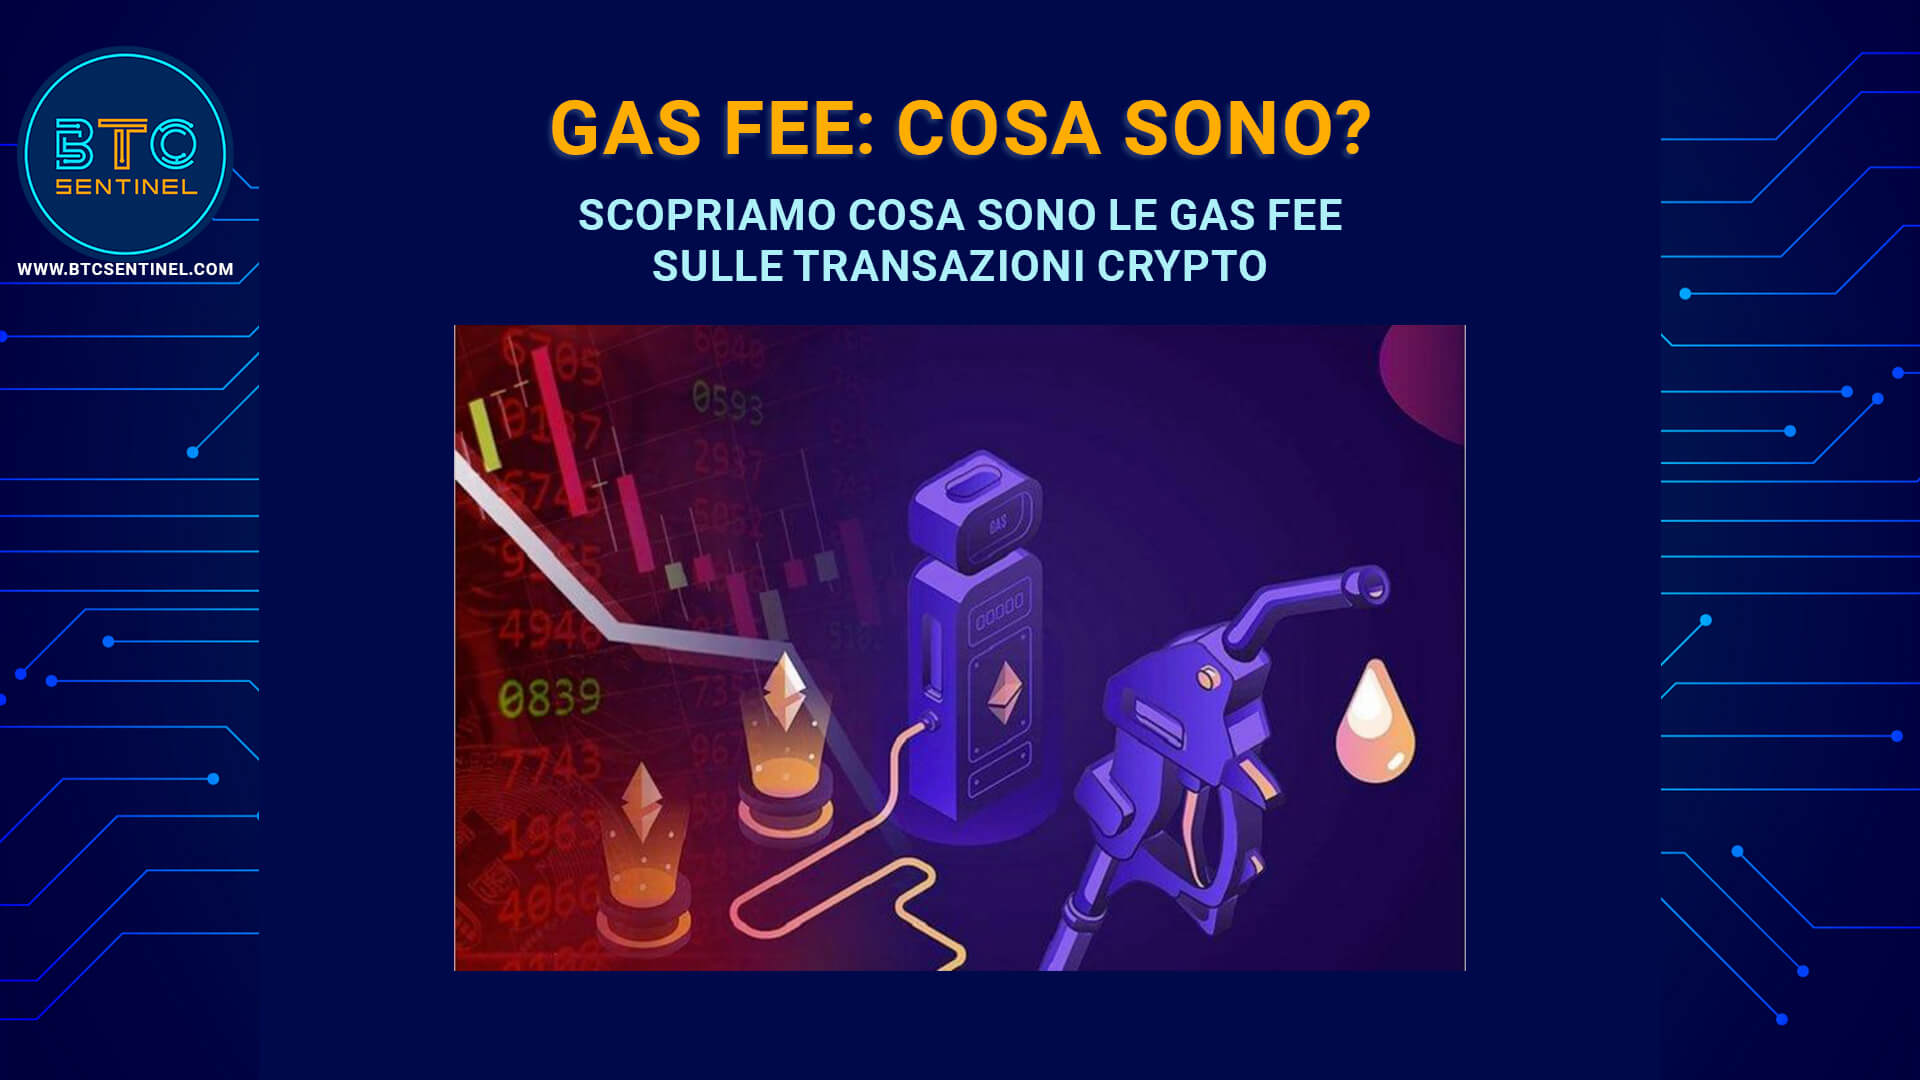 Gas fee: cosa sono? Cosa sono le gas fees nel mondo crypto?